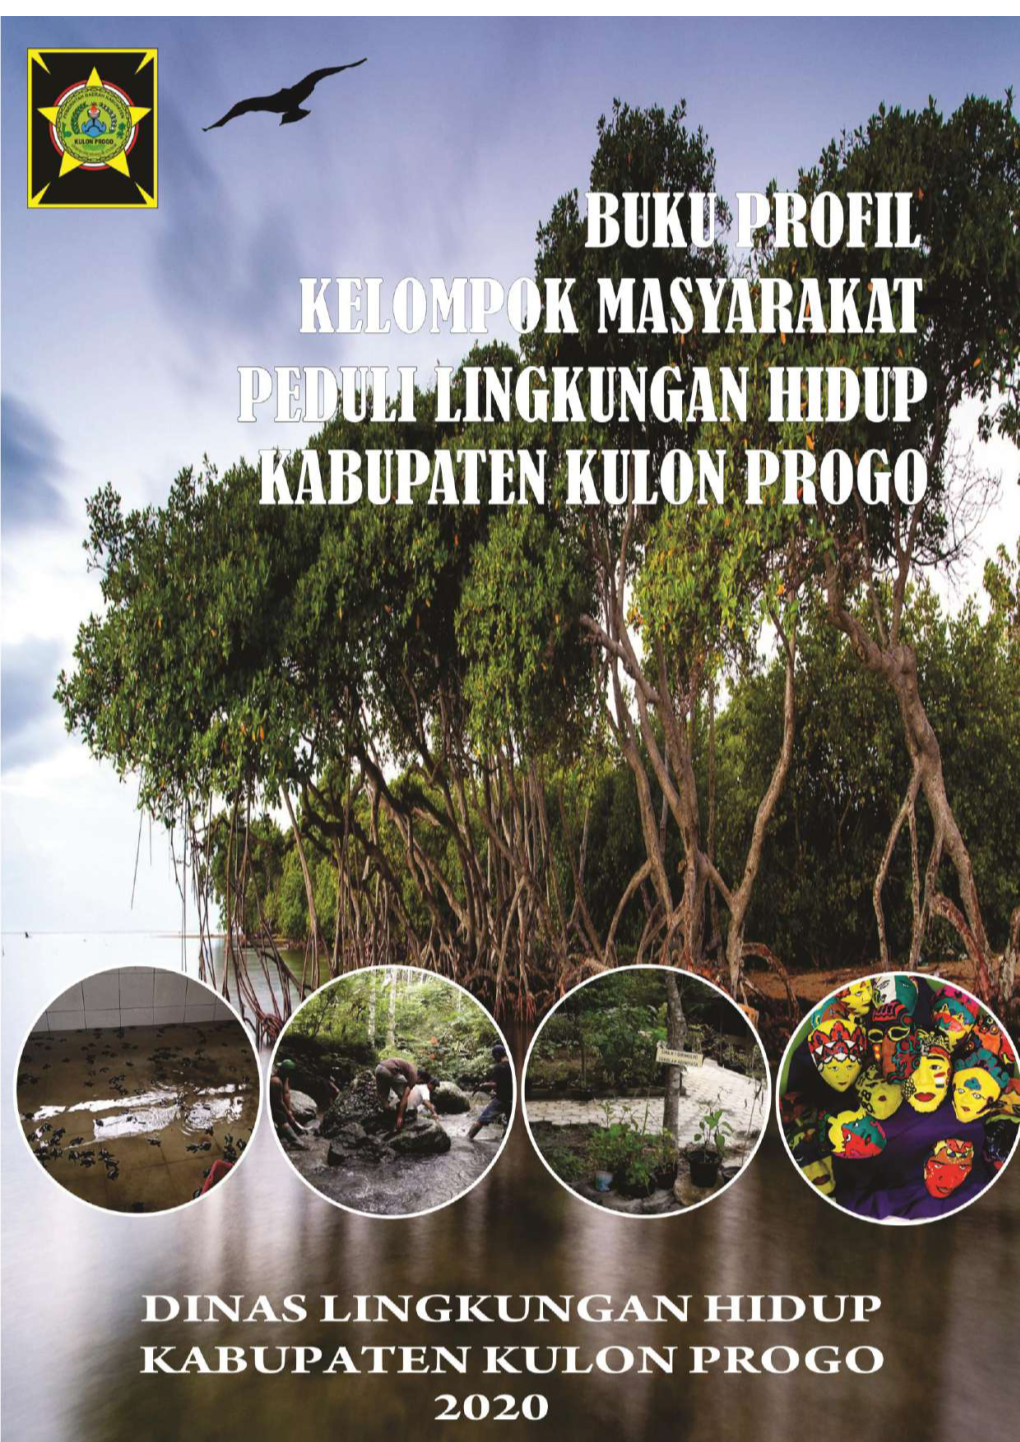 Buku Profil Kelompok Masyarakat Peduli Lingkungan Hidup Kabupaten Kulon Progo